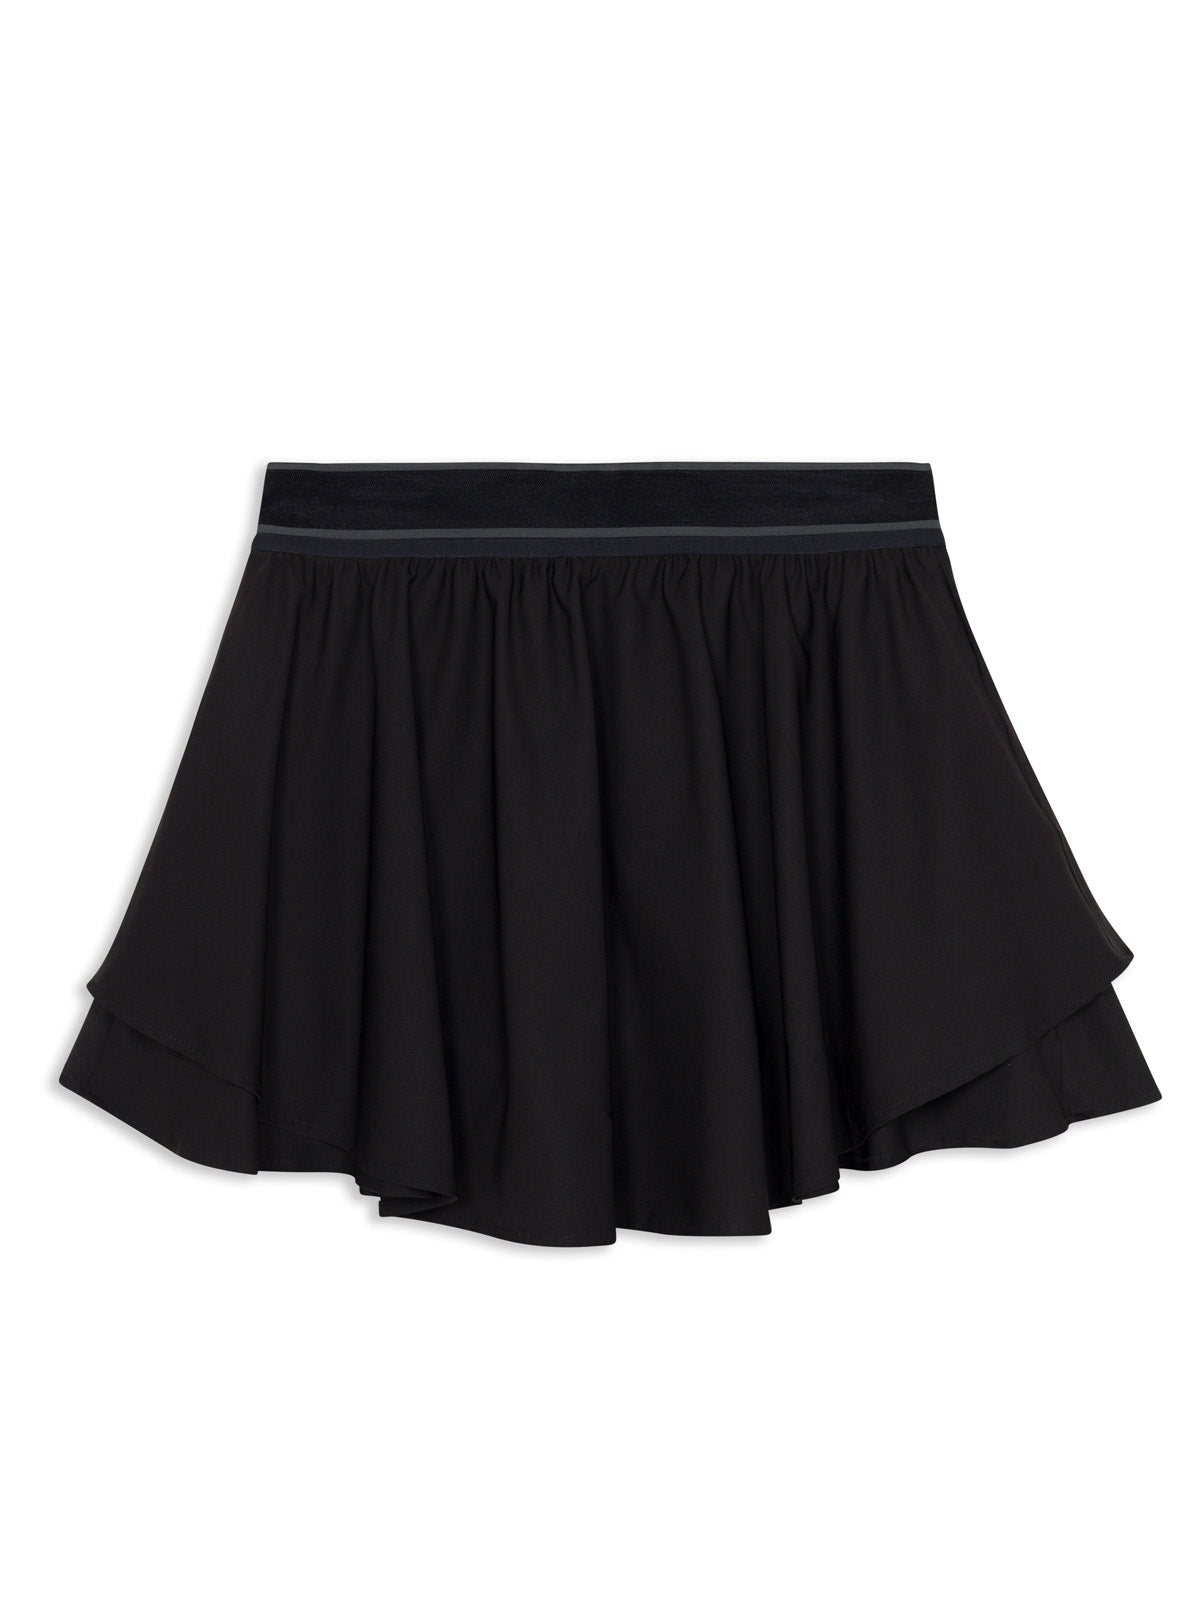 Play On 15in Skirt - tasc Performance (Black)